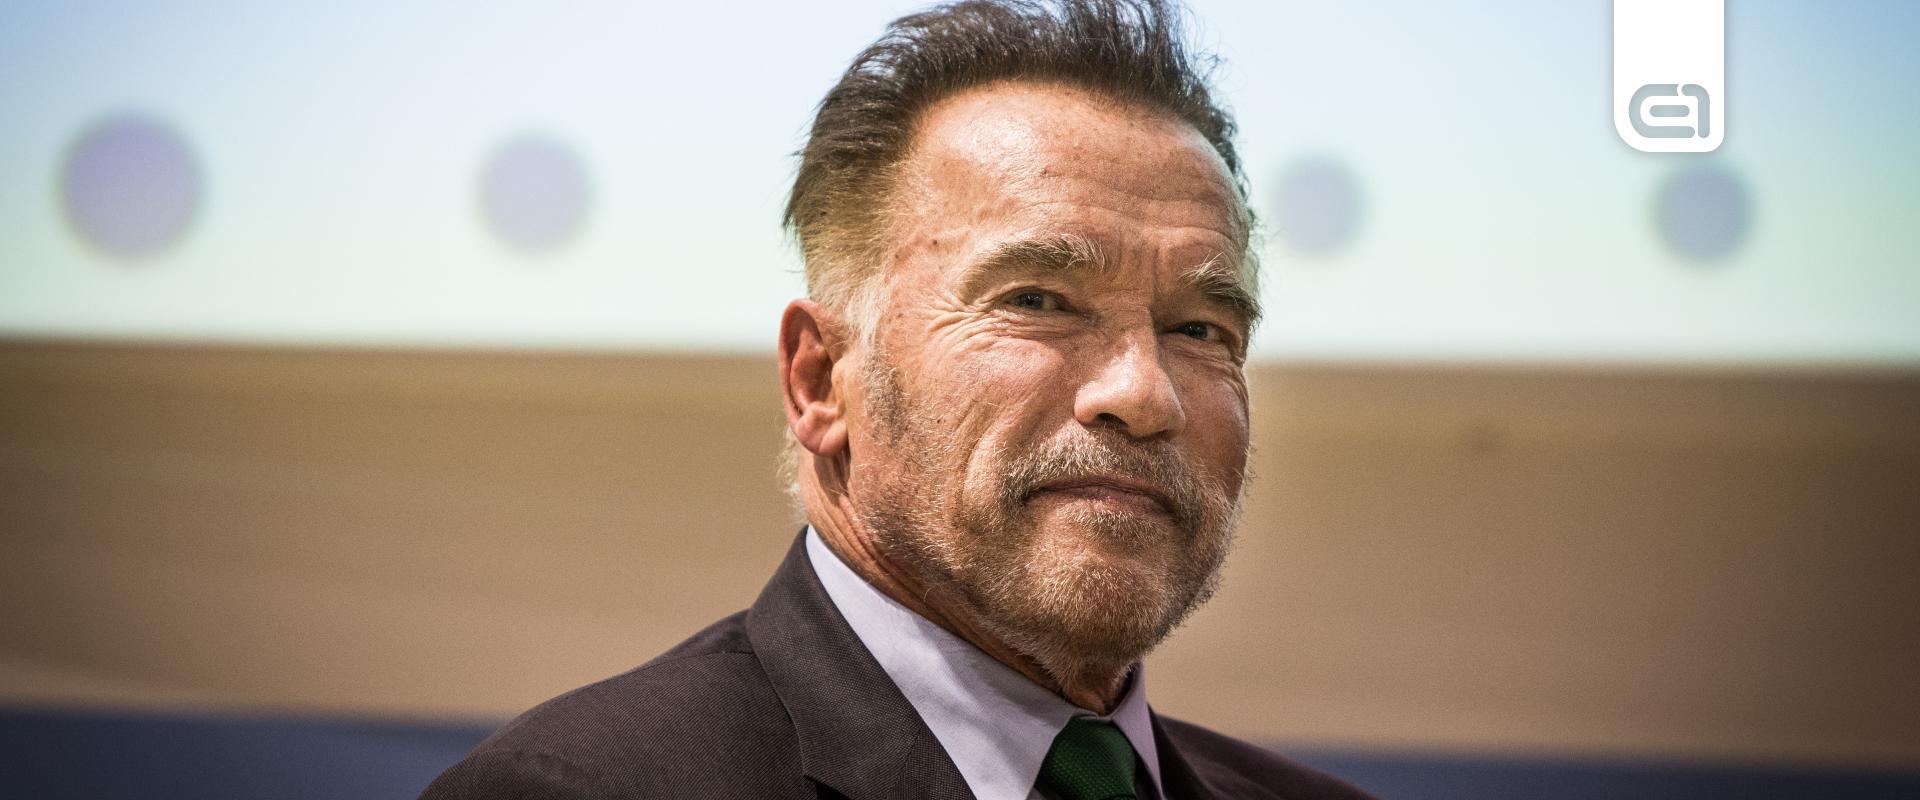 Schwarzenegger utoljára még eljátszaná az egyik ikonikus szerepét